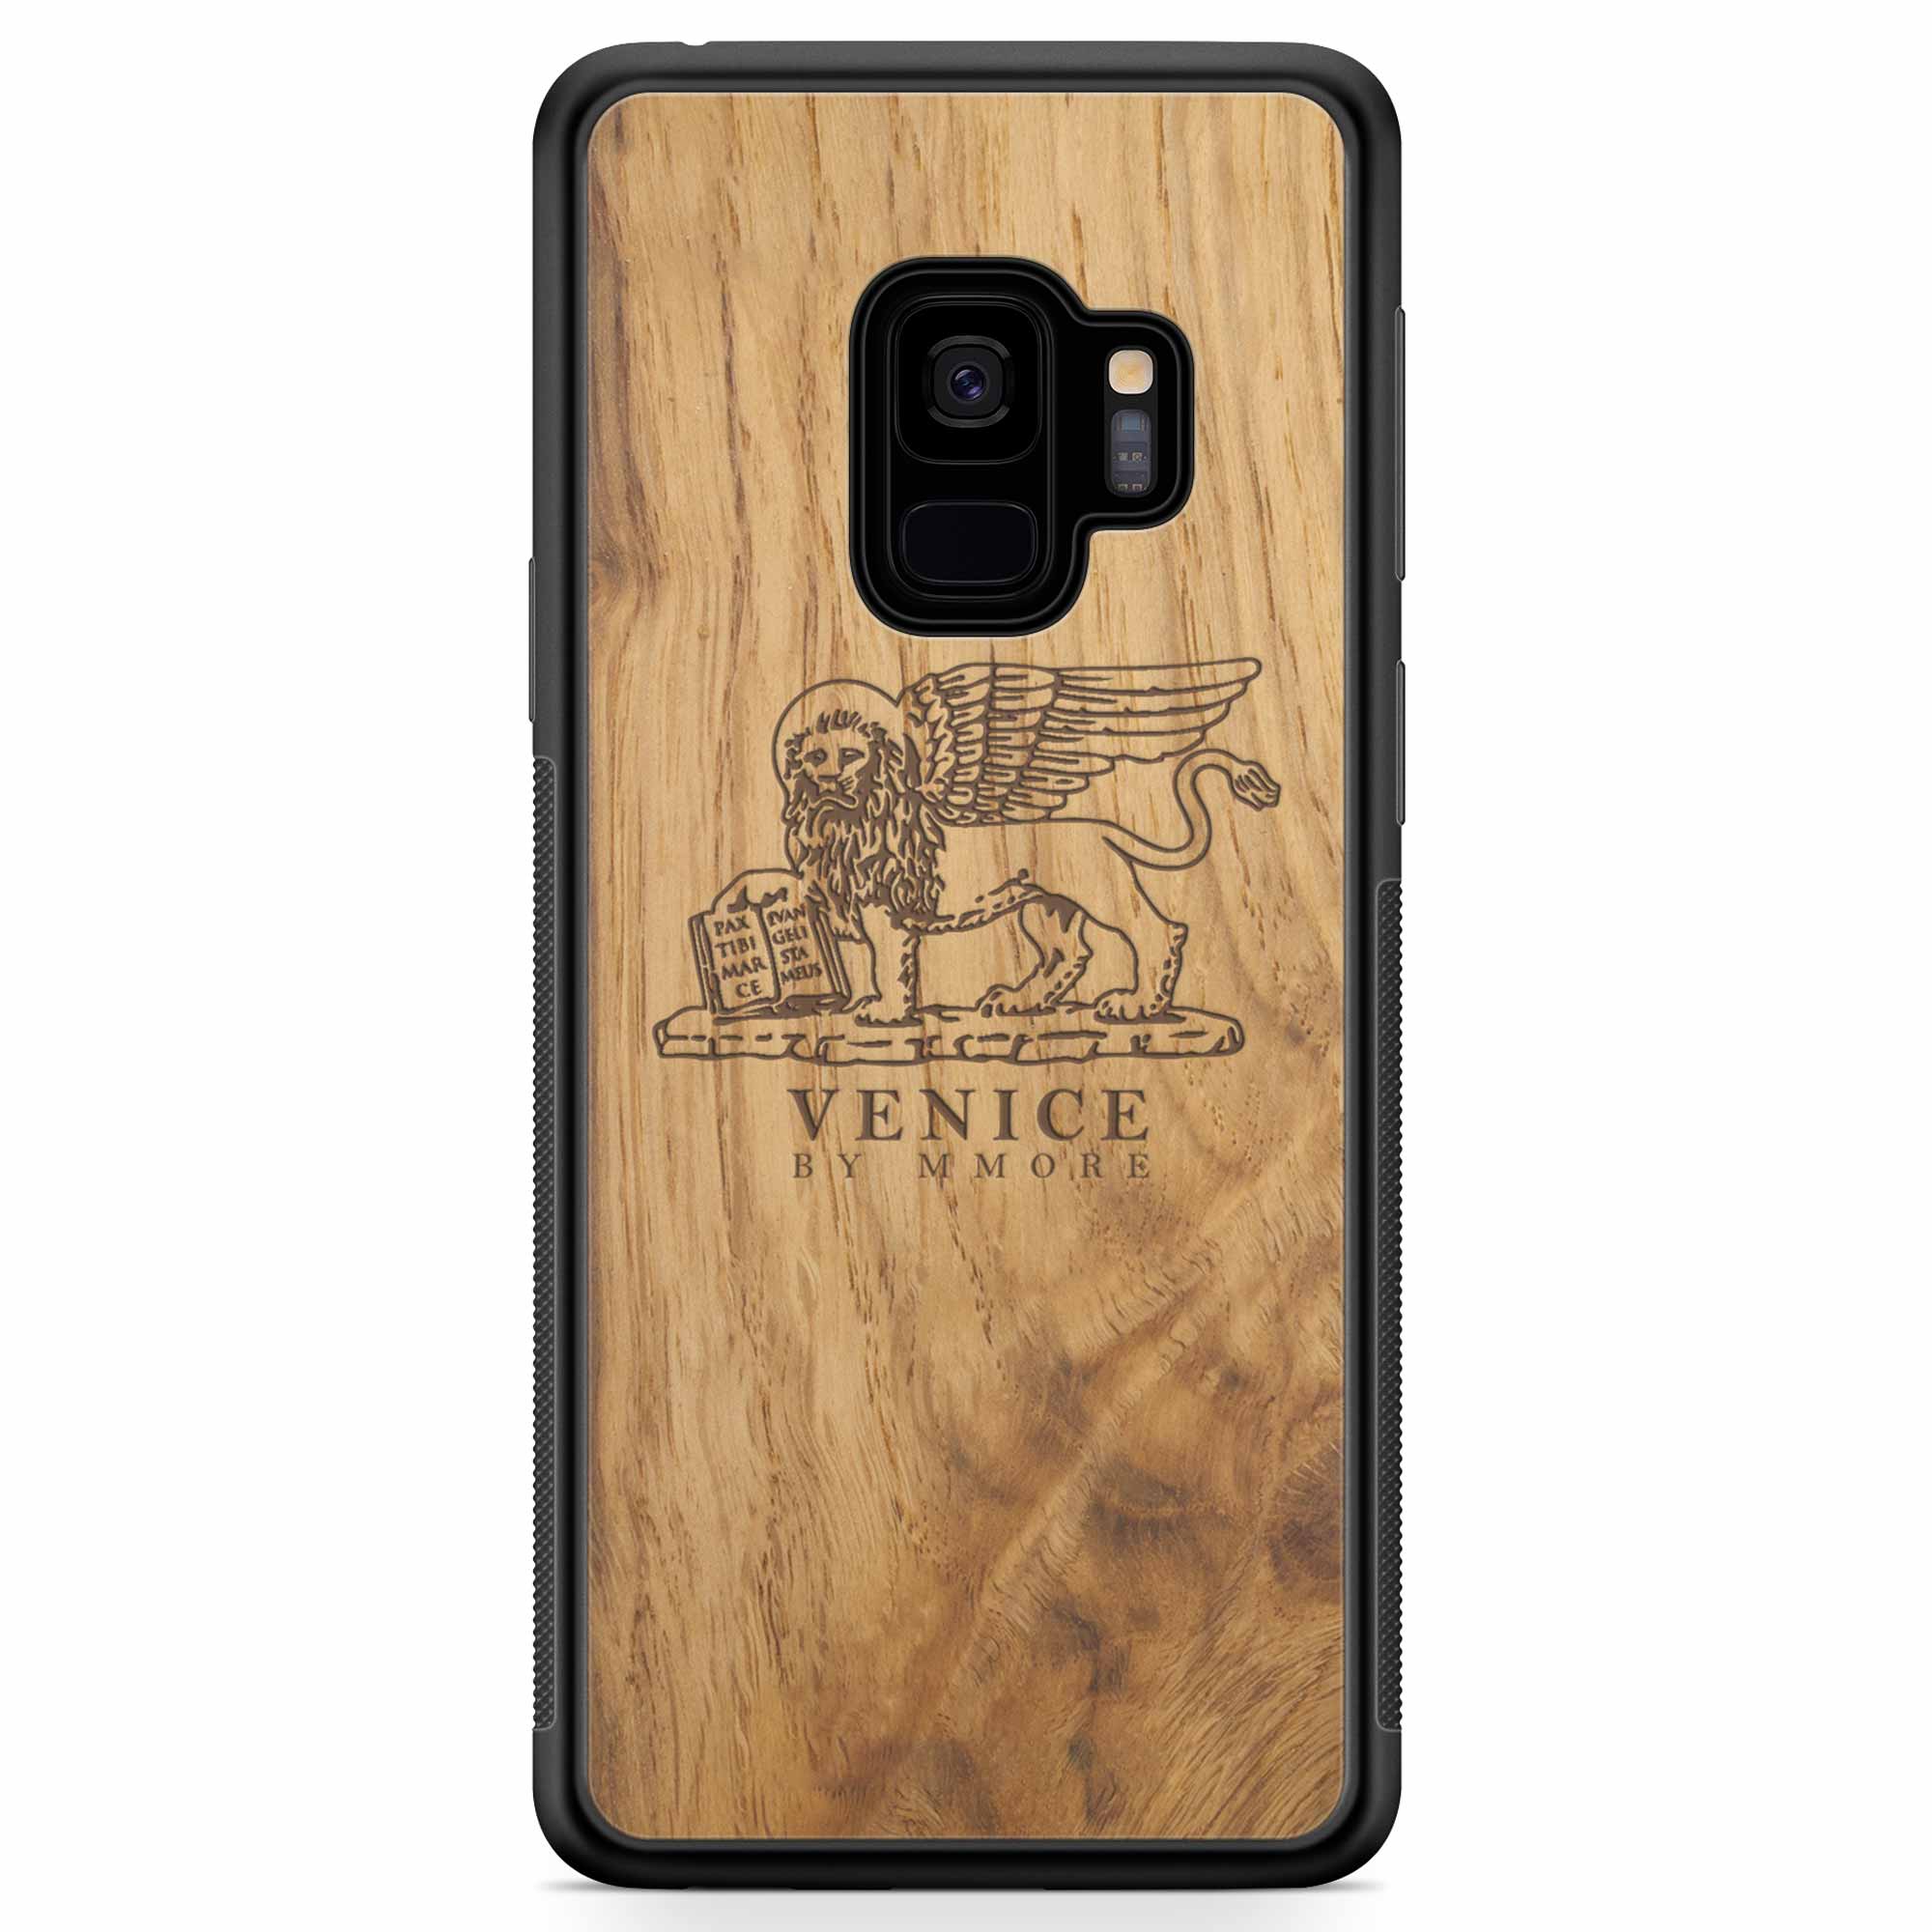 Custodia in legno antico per Samsung S9 con leone di Venezia